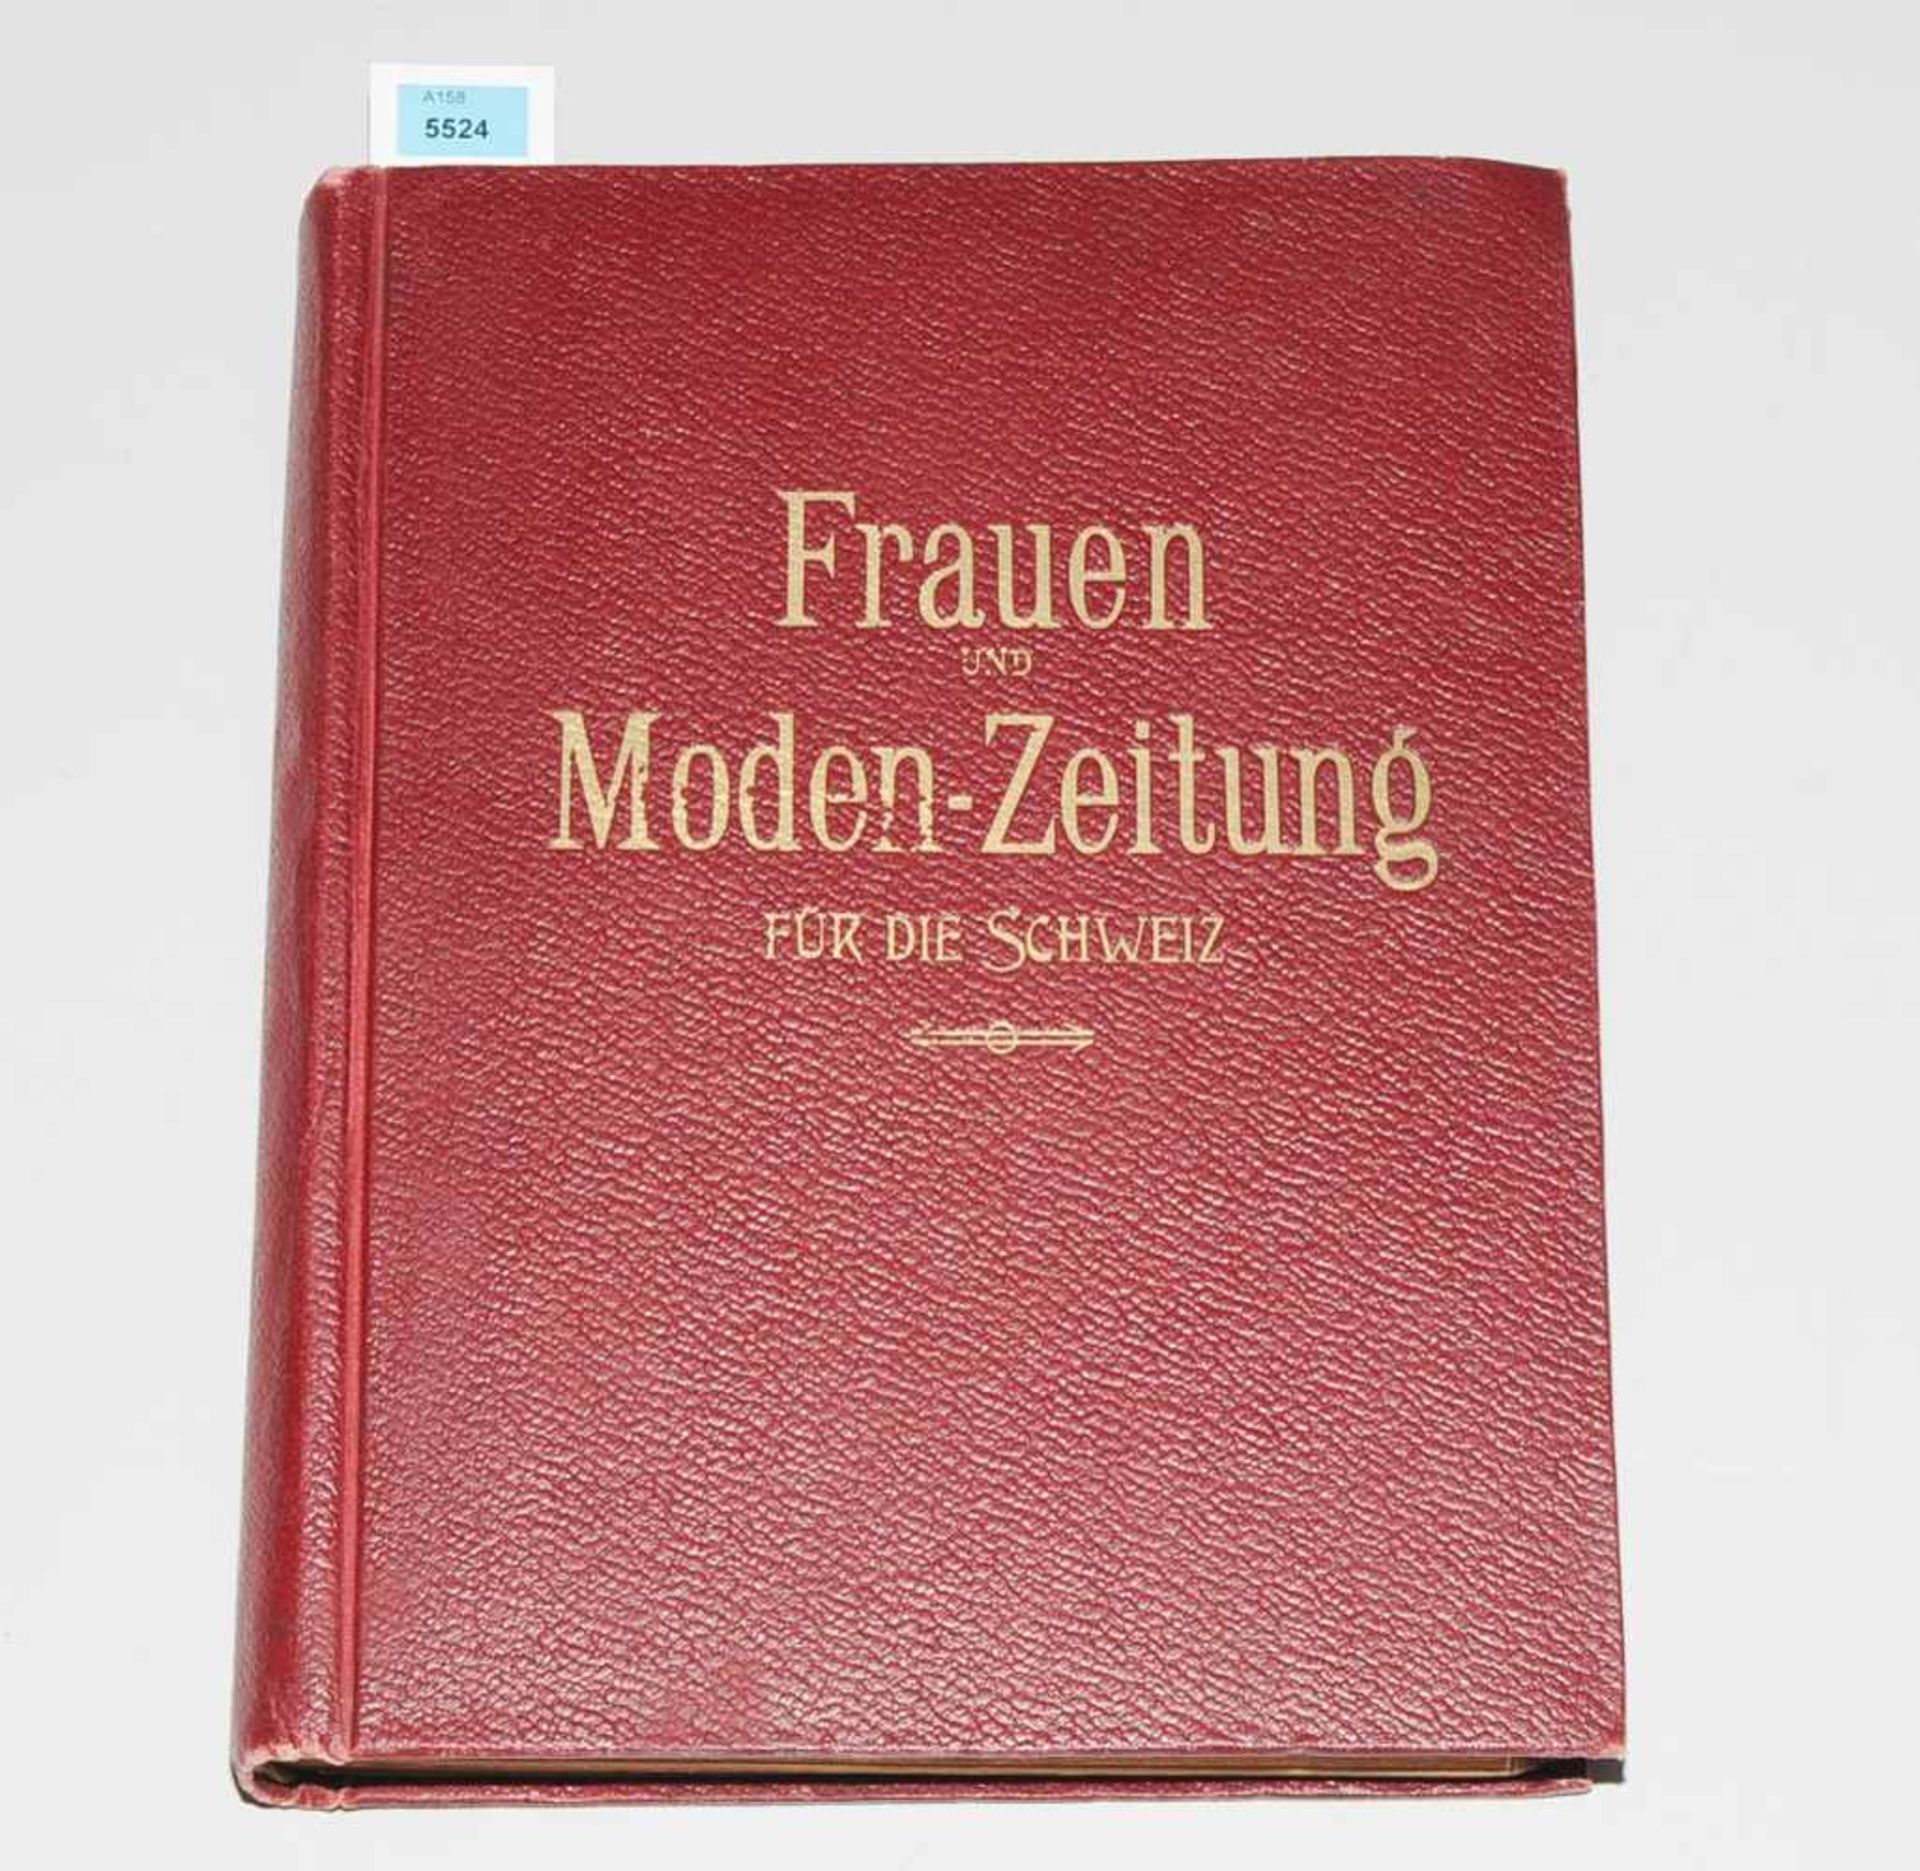 Buch "Frauen und Moden-Zeitung für die Schweiz"